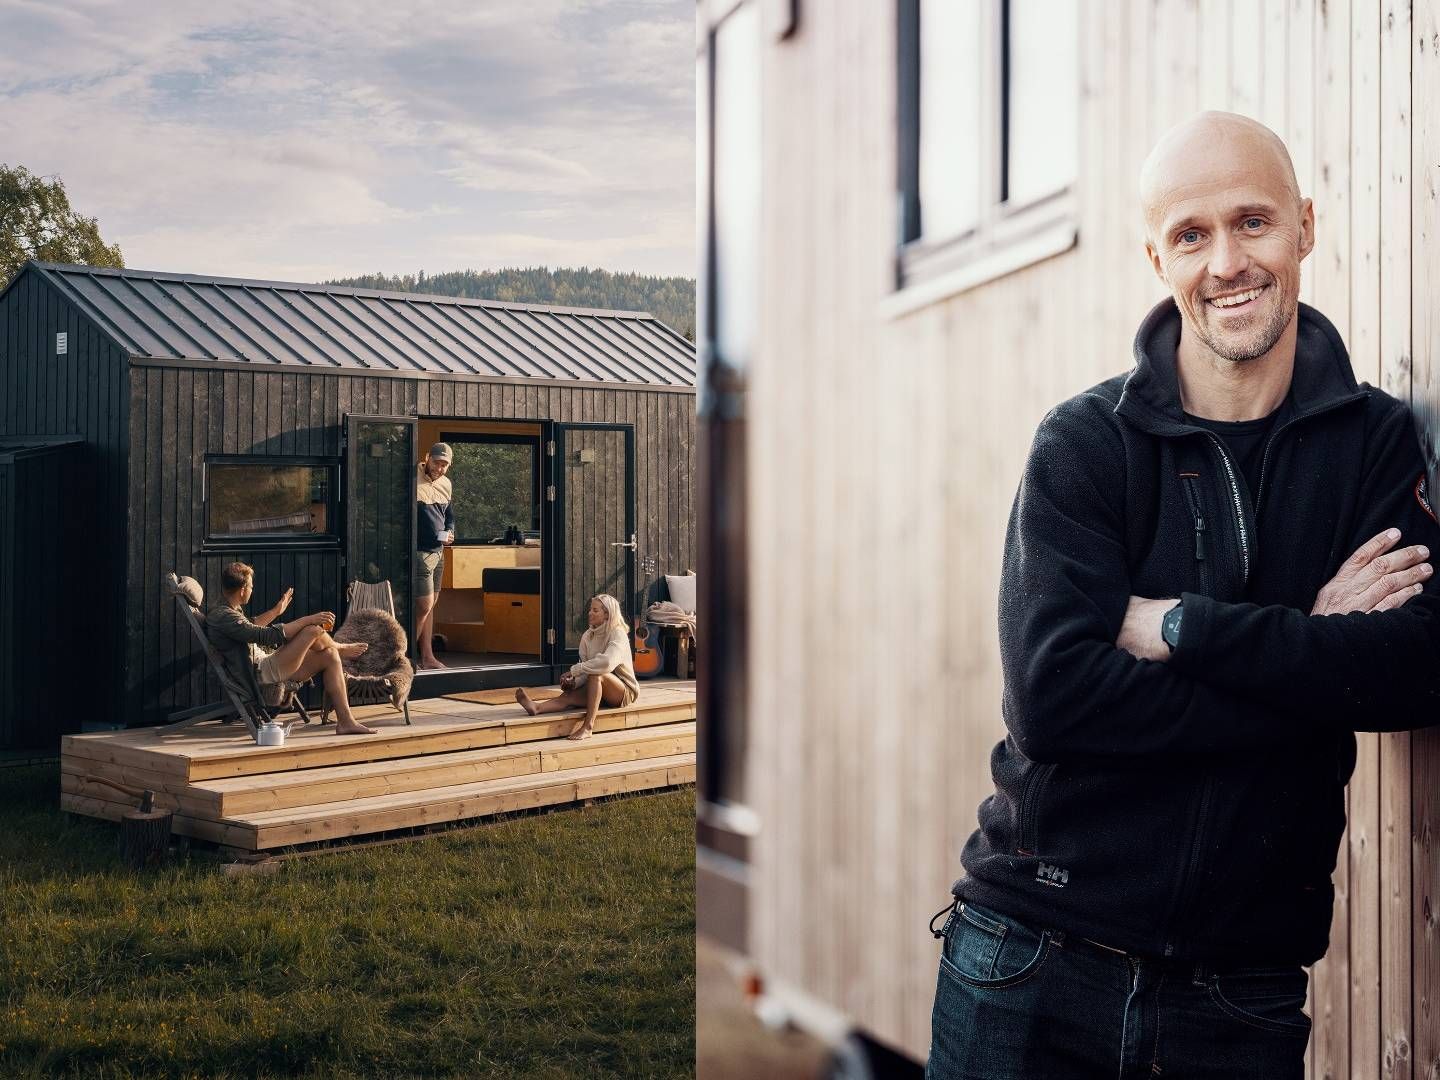 VIL ÅPNE NYE DØRER: I flere, gjerne mindre tettbygde, strøk ønsker David Reiss-Andersen i Norske Mikrohus seg å tilby flere av de små og flyttbare husene som selskapet hans står bak. | Foto: Norske Mikrohus